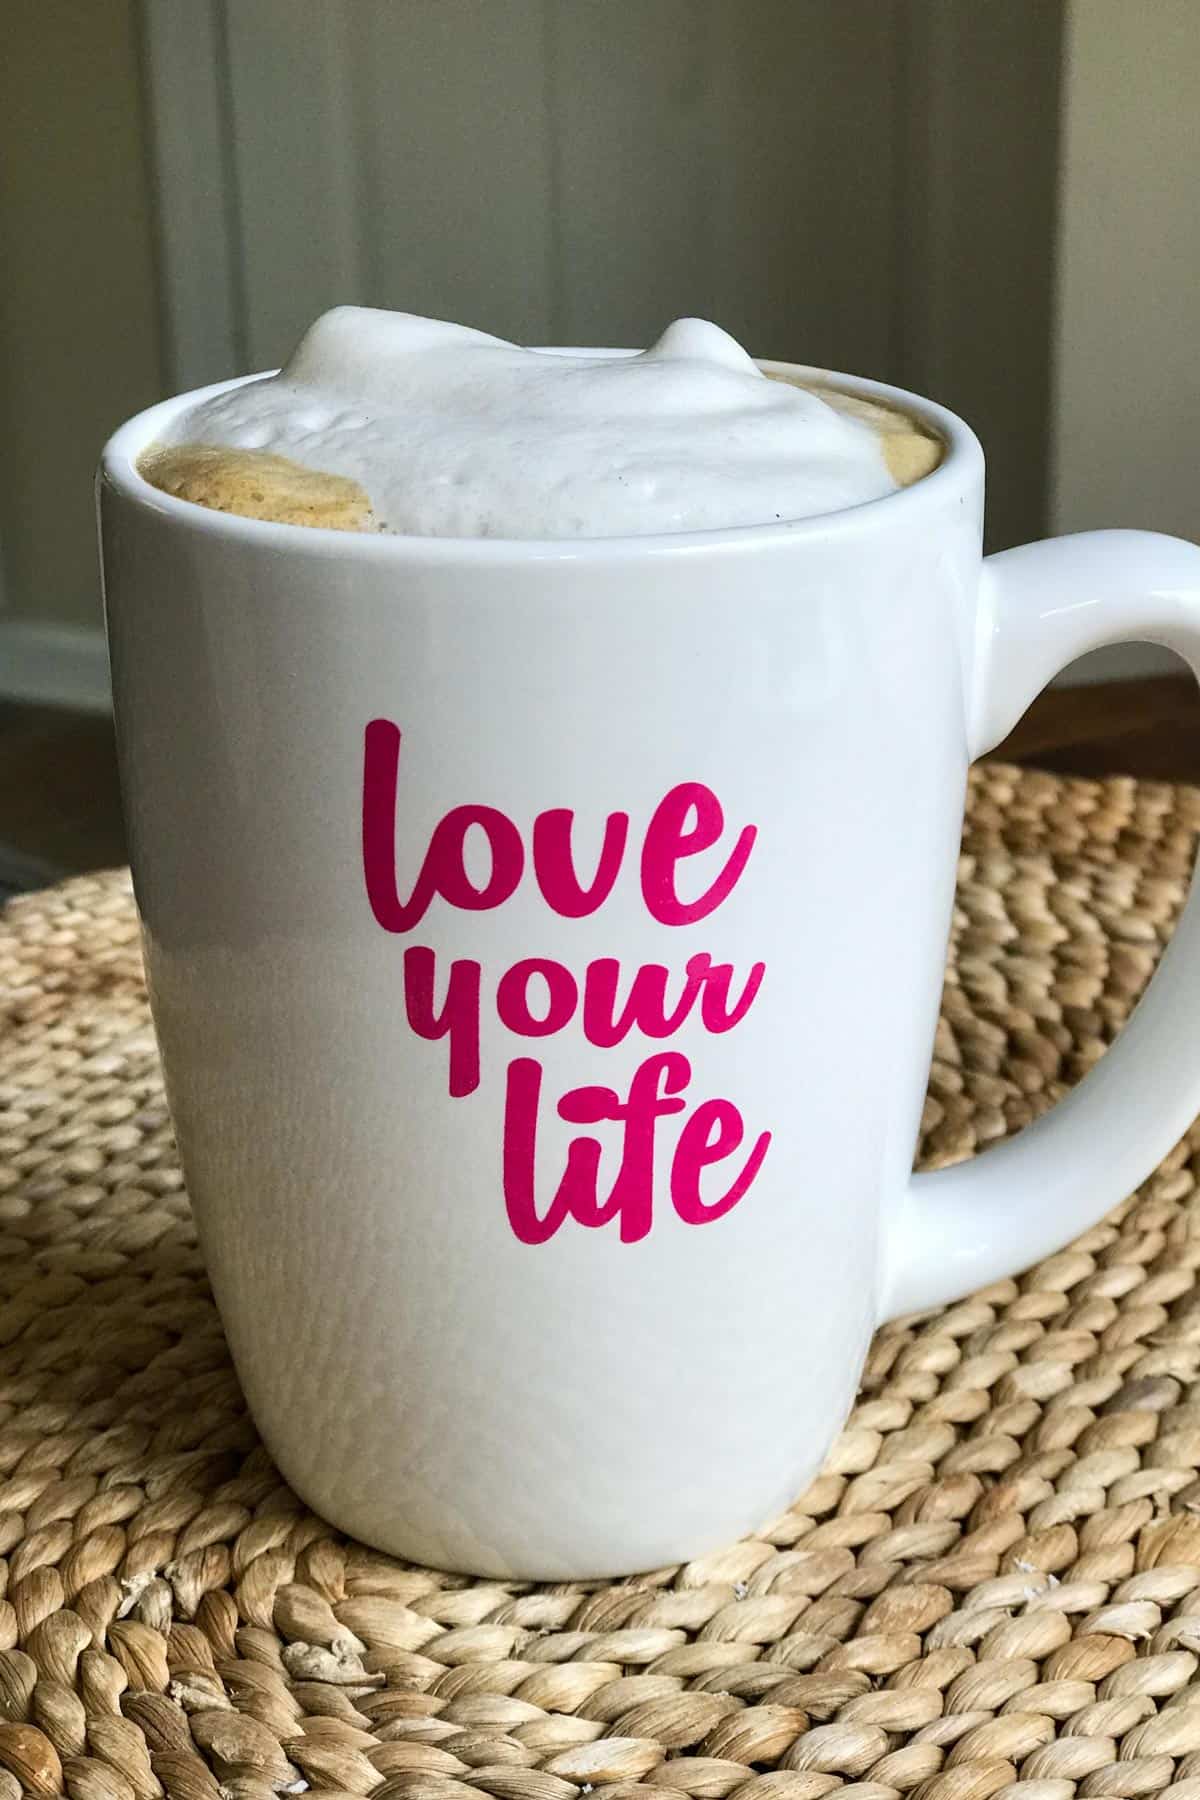 Kapučīno bez piena produktiem krūzē ar uzrakstu "mīli savu dzīvi"